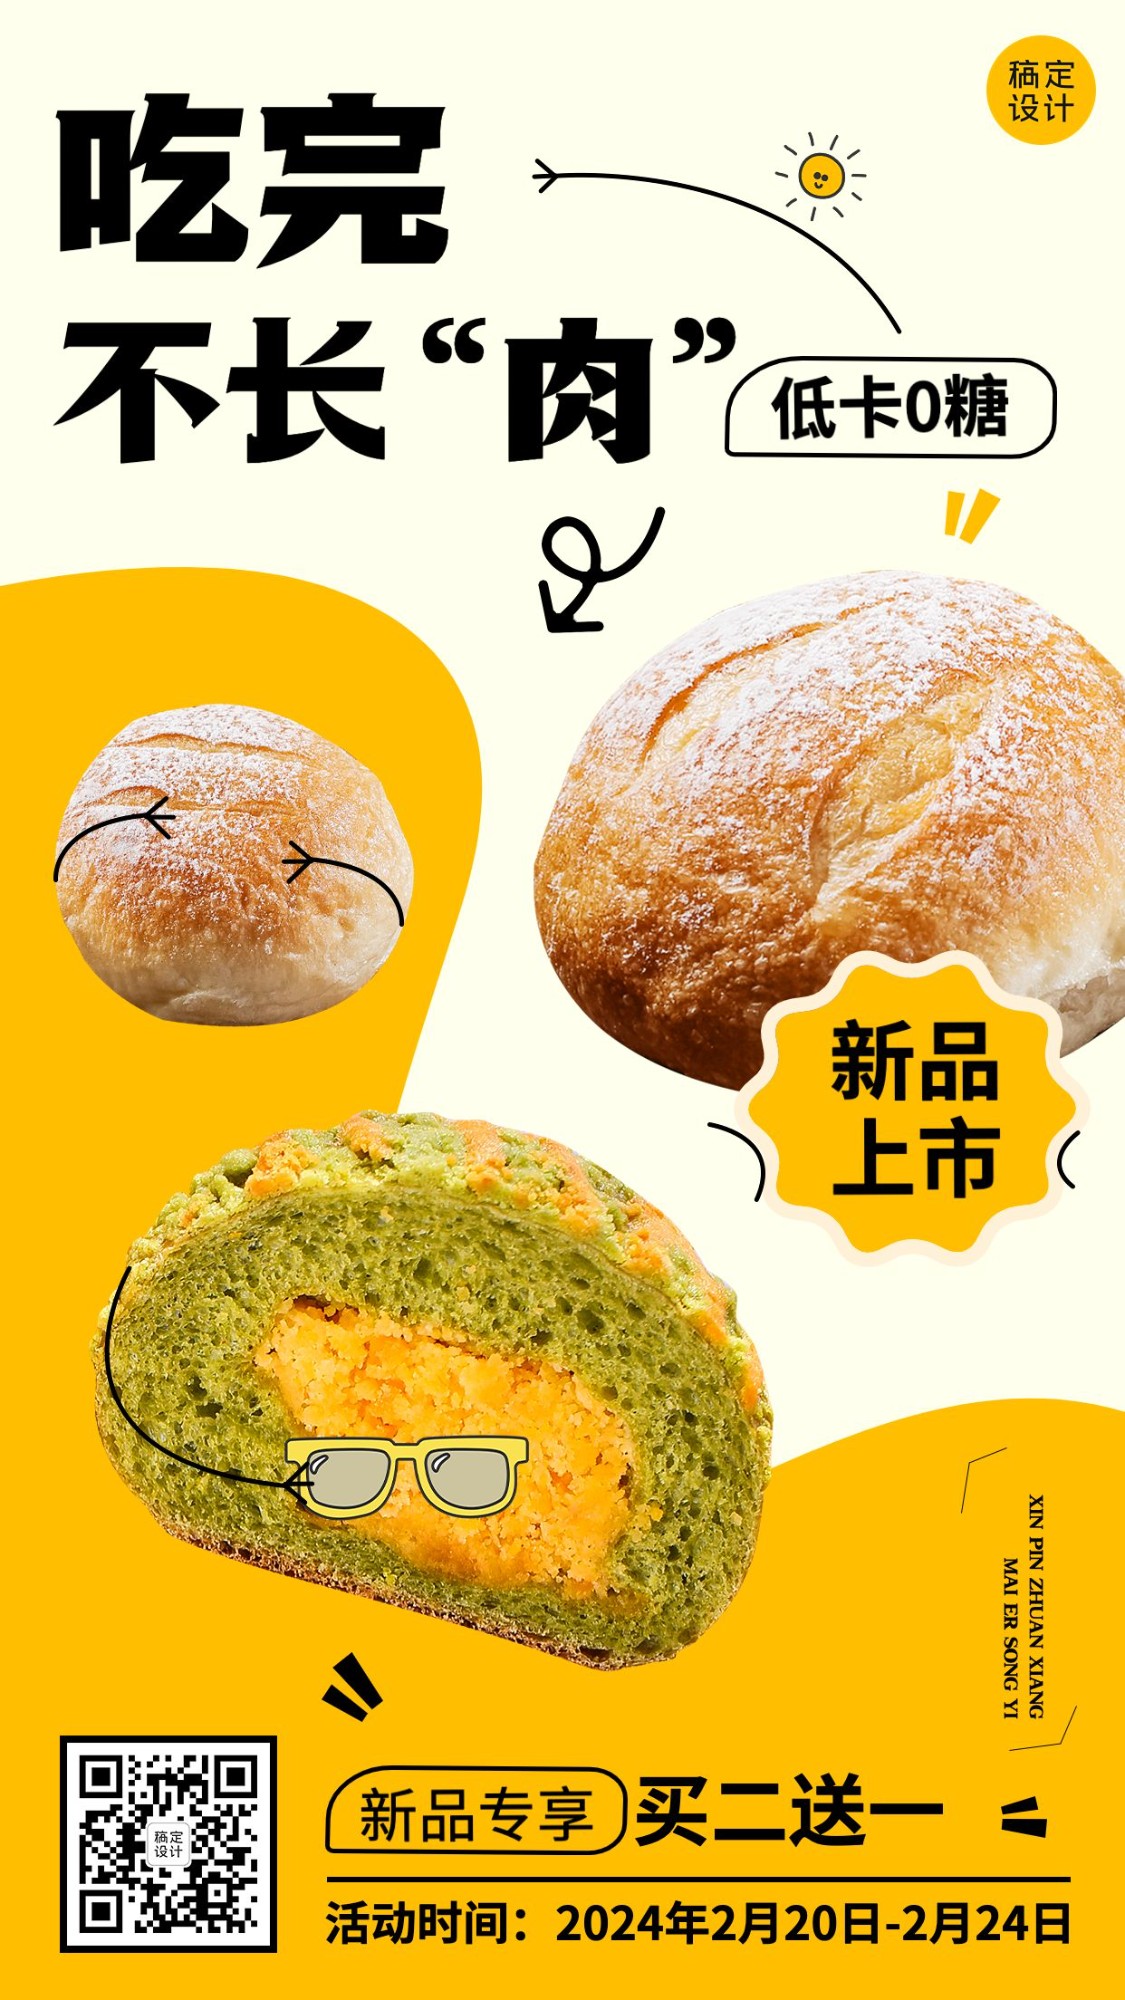 餐饮美食烘焙甜品新品上市手机海报预览效果